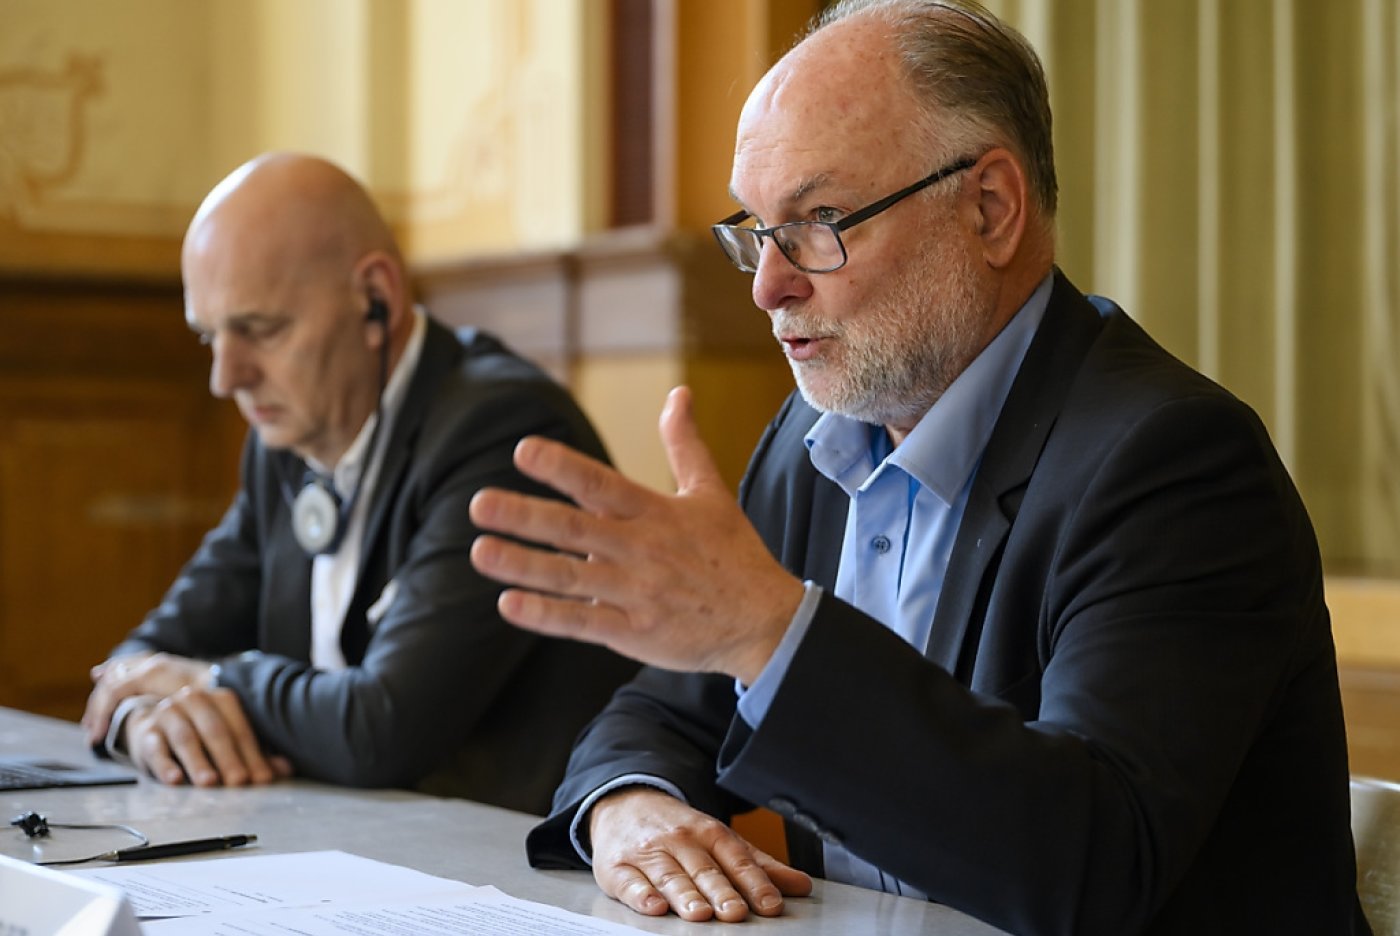 Début mars, Johann Reiter, CEO du groupe Vetropack, gauche, et Claude R. Cornaz, droite, président du conseil d'administration avaient annoncé l'ouverture d'une procédure de consultation sur l'avenir du site de production suisse de St-Prex (archives). KEYSTONE